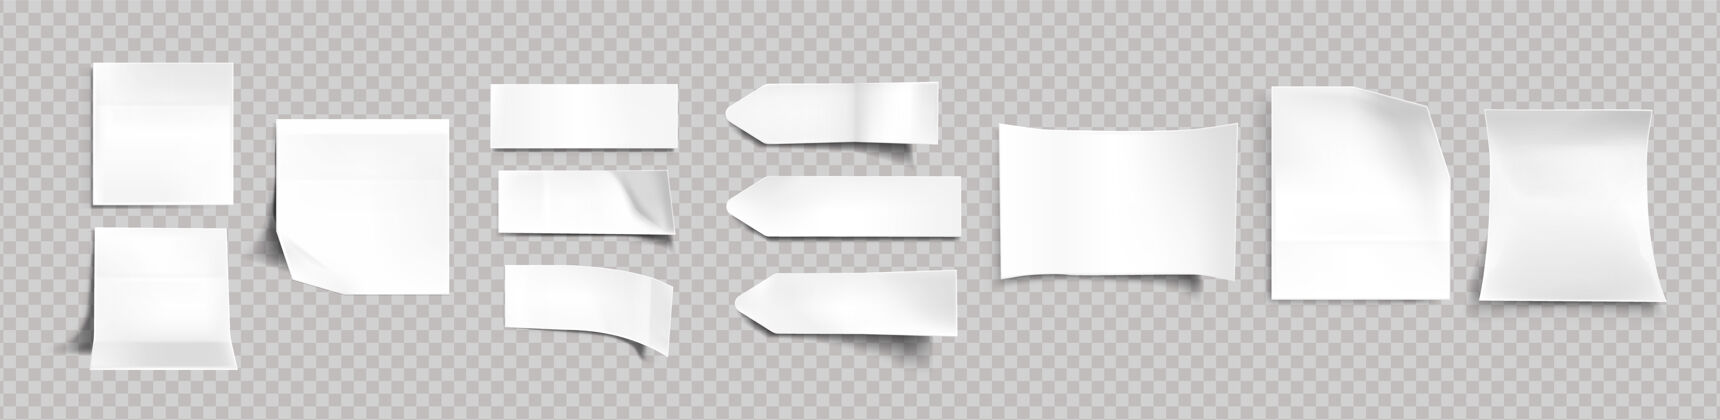 角不同形状的白色贴纸 带阴影和折边 标签 备忘录模型的便签 隔离在透明的背景上纸胶带 空白现实的三维向量集纸板对象空